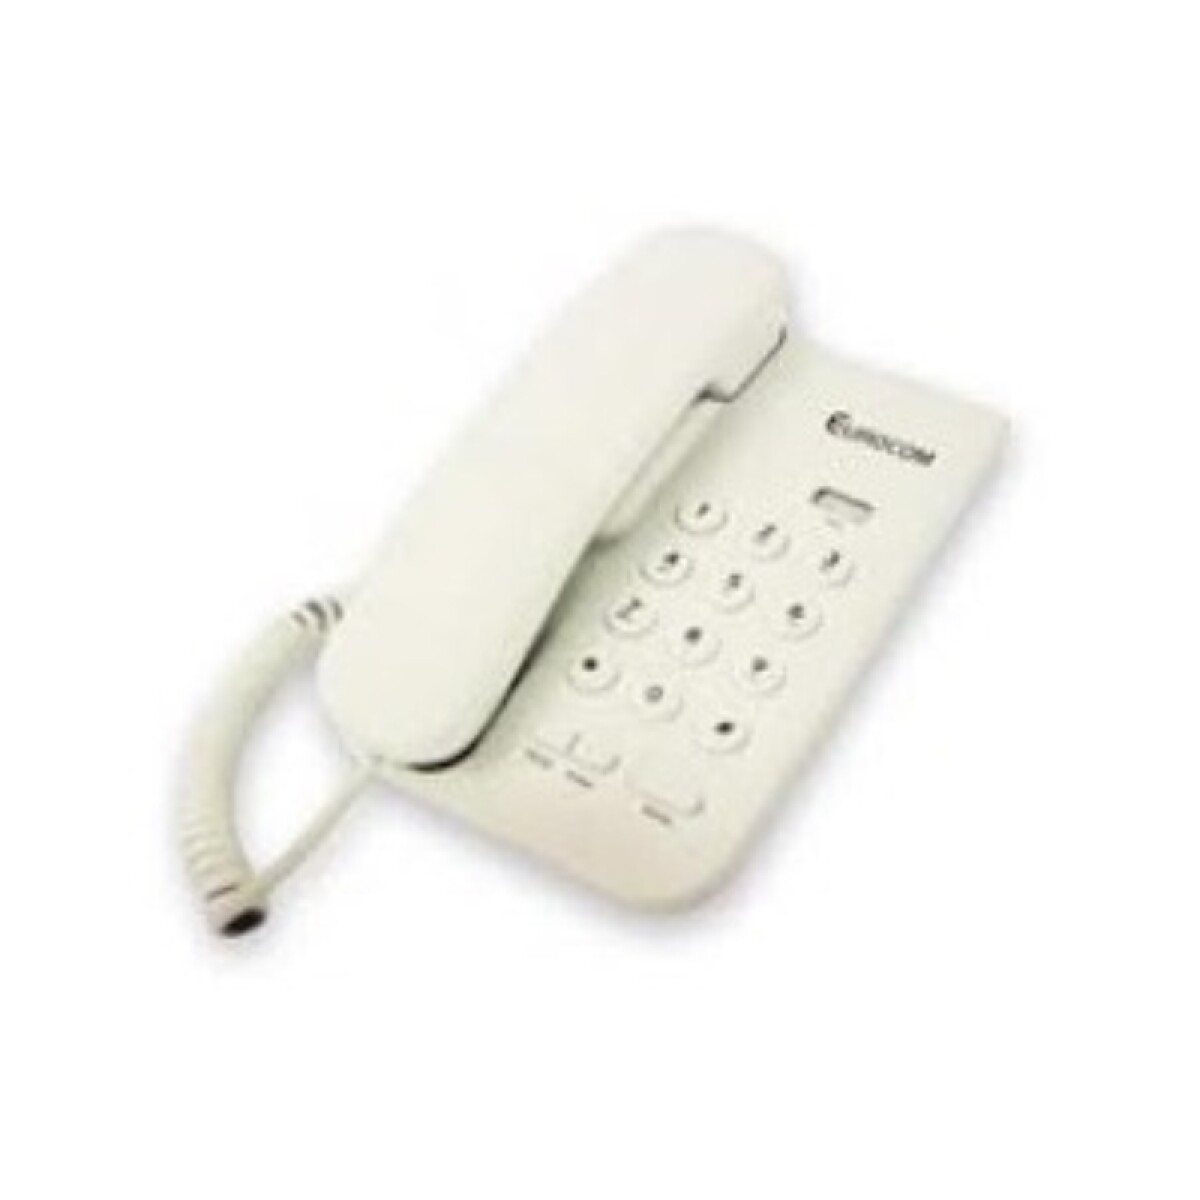 Telefono De Mesa Eurocom Te-600 